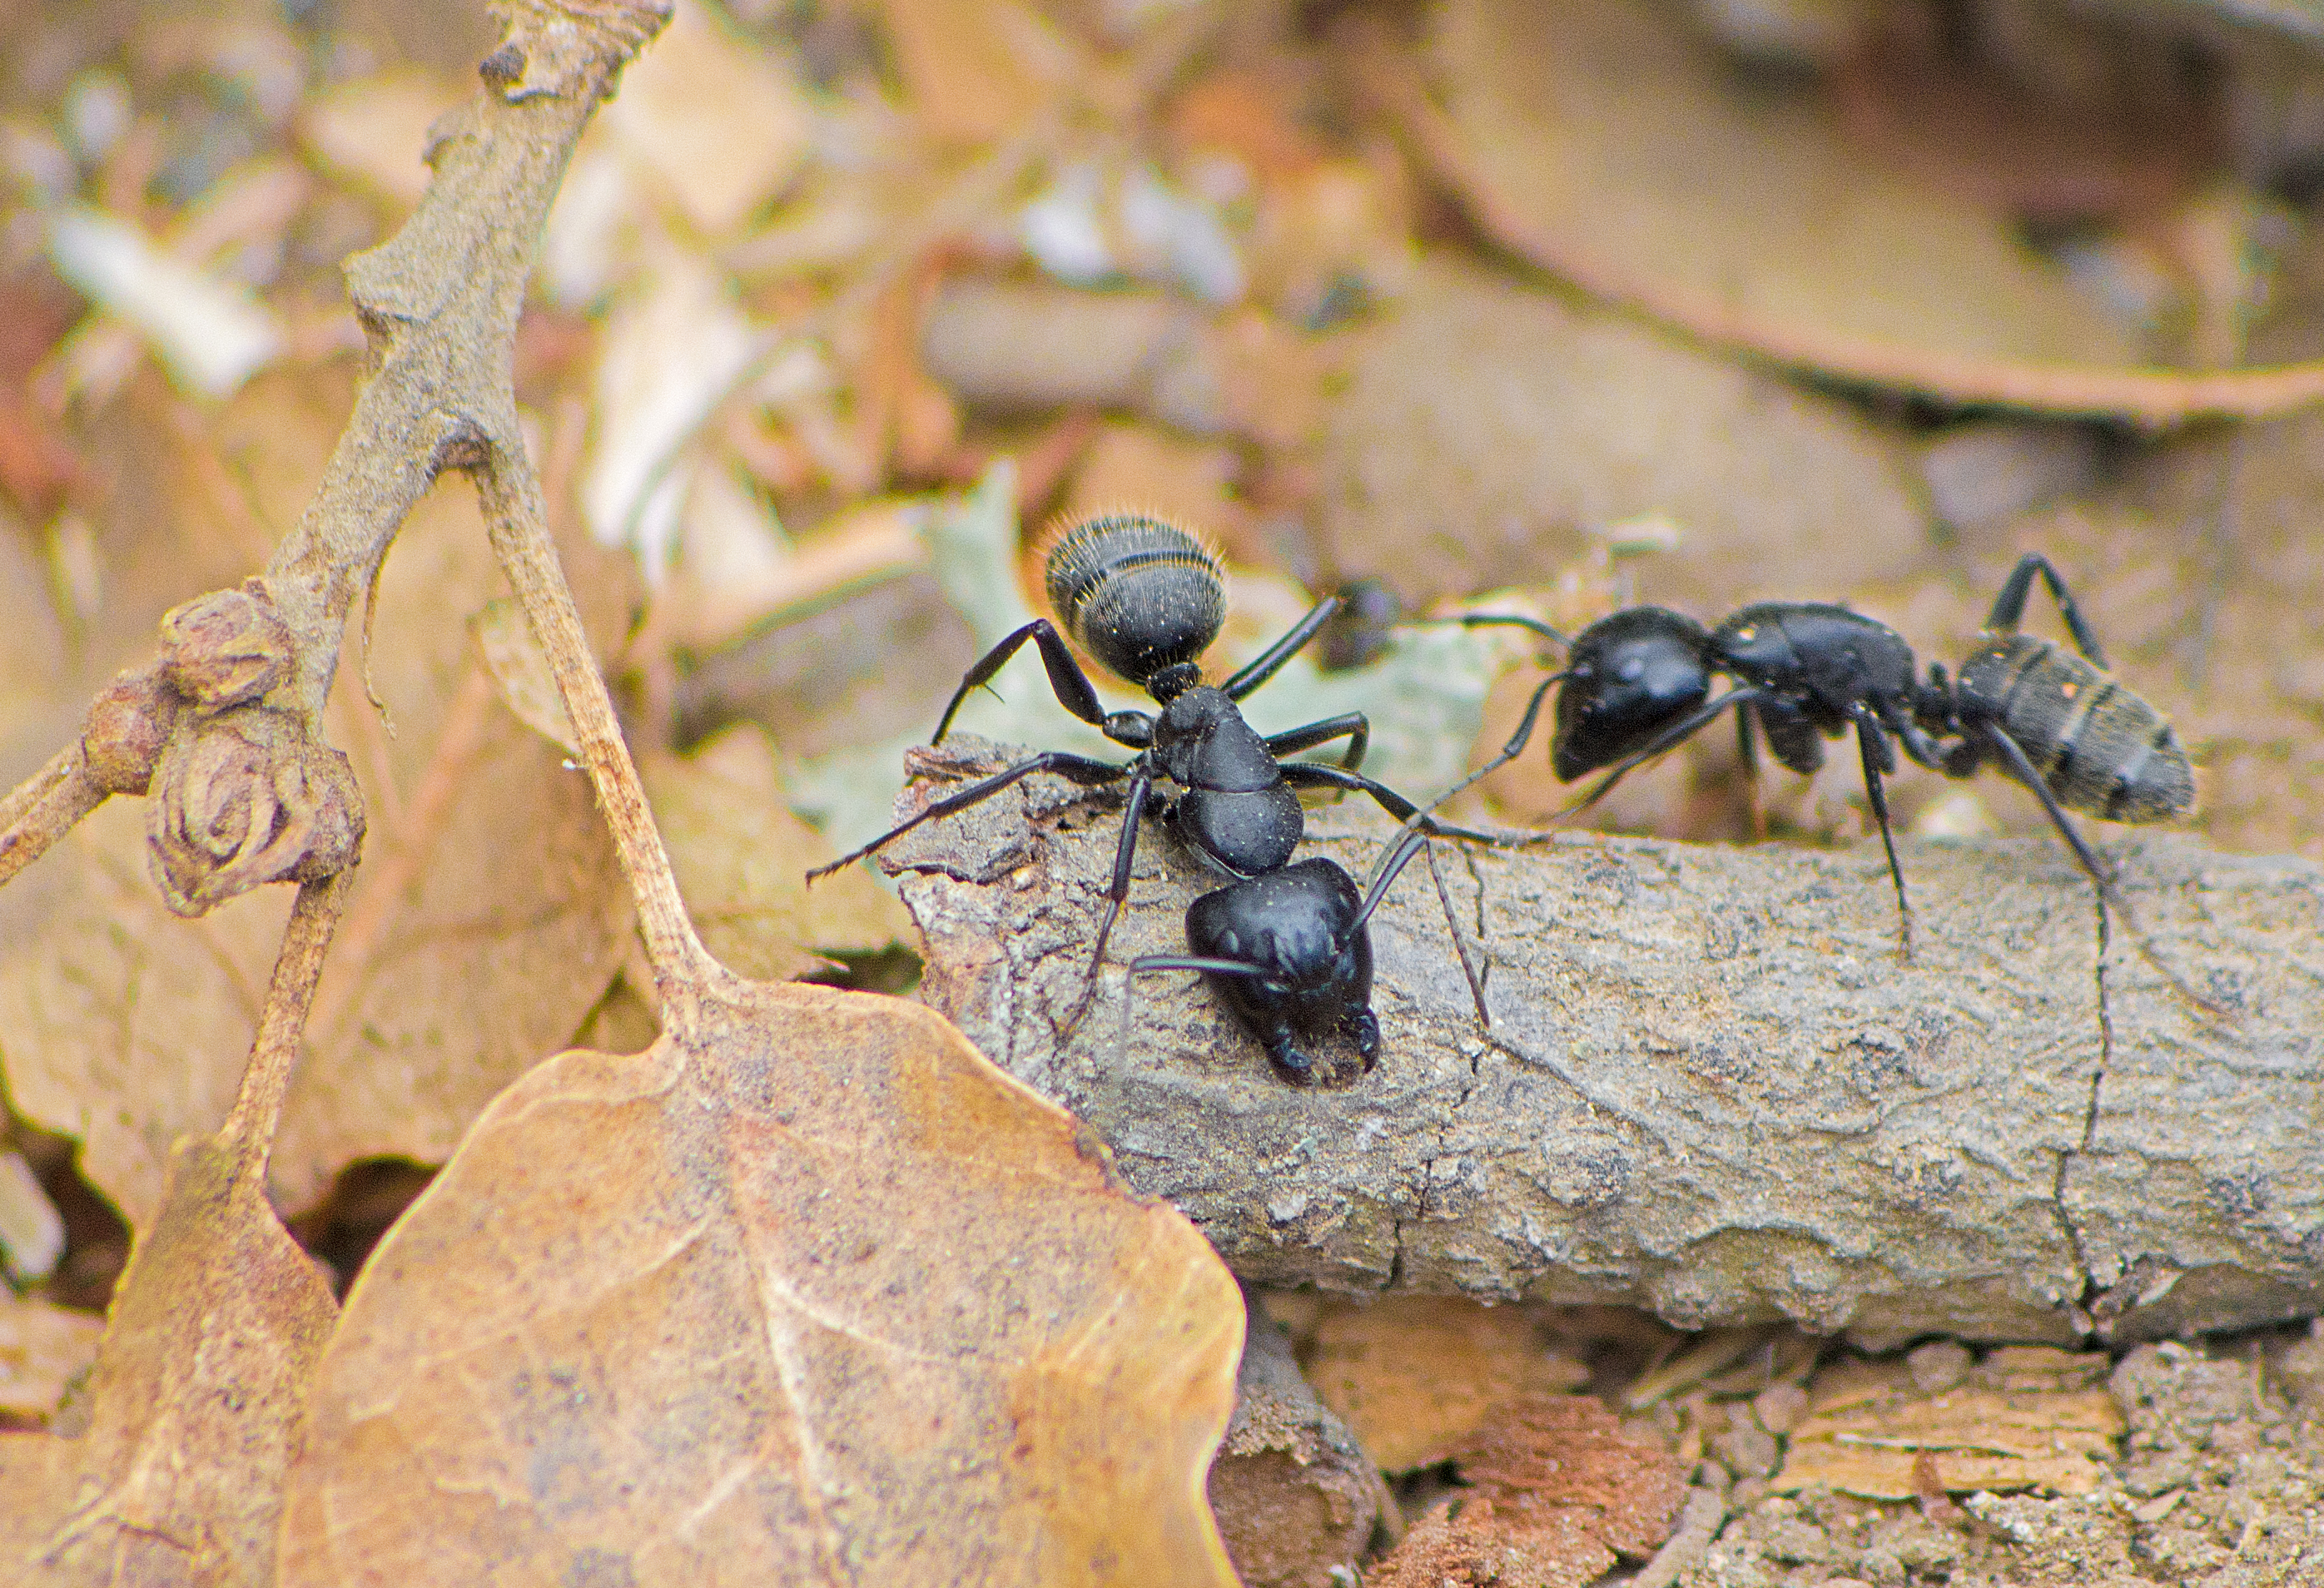 Черный муравей. Муравей древоточец. Муравьи-древоточцы (Camponotus). Красногрудый муравей-древоточец. Camponotus lameerei / тугайный муравей-древоточец.